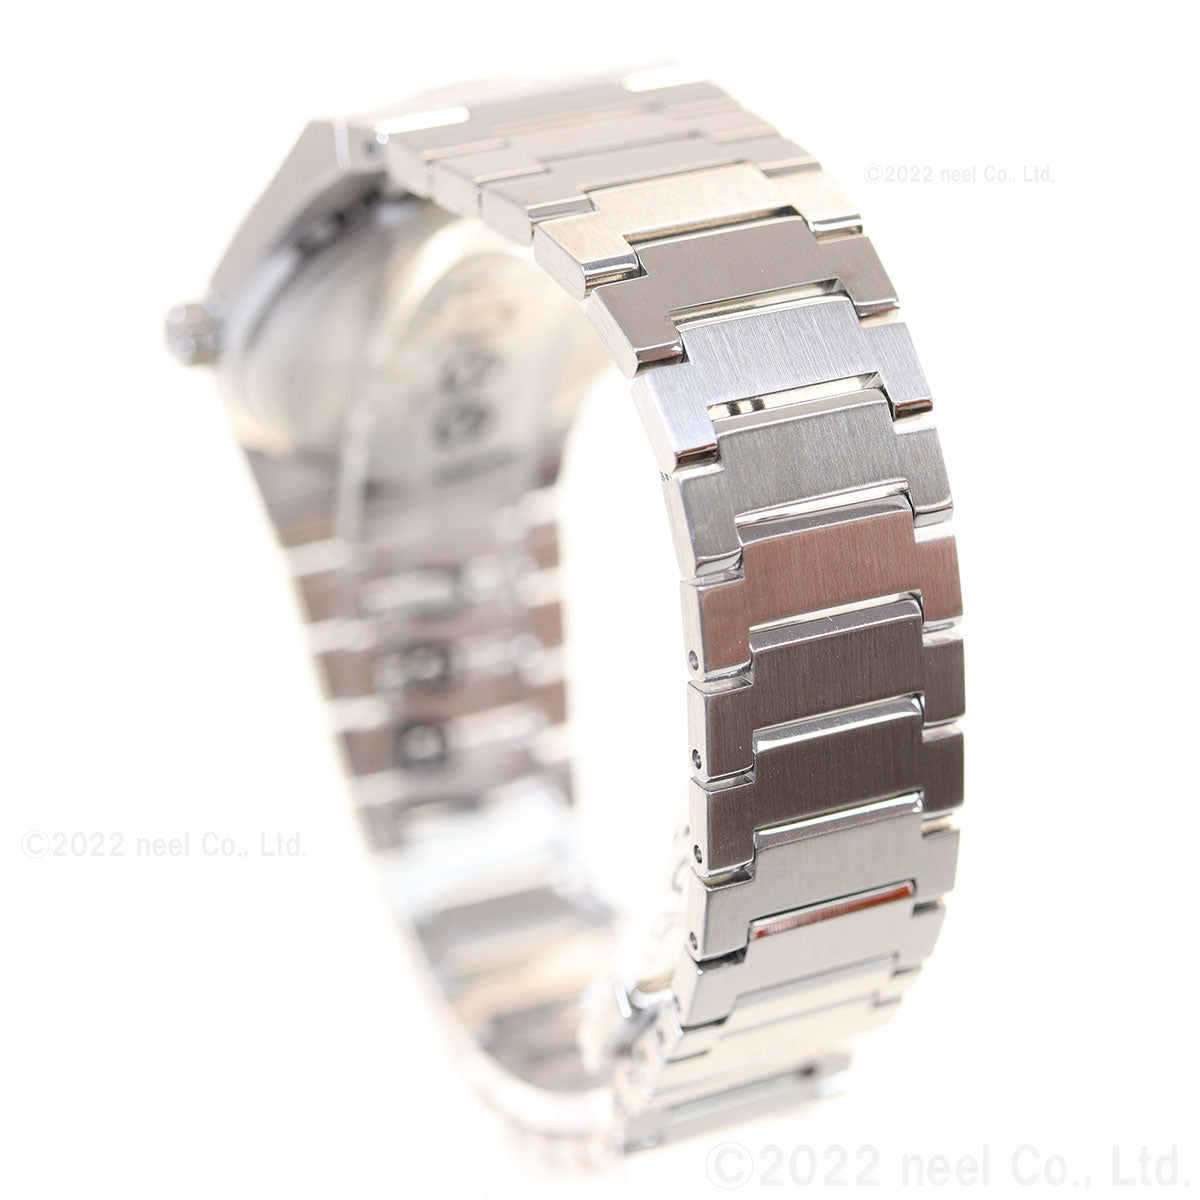 ティソ TISSOT 腕時計 メンズ レディース PRX ピーアールエックス T137.210.11.031.00